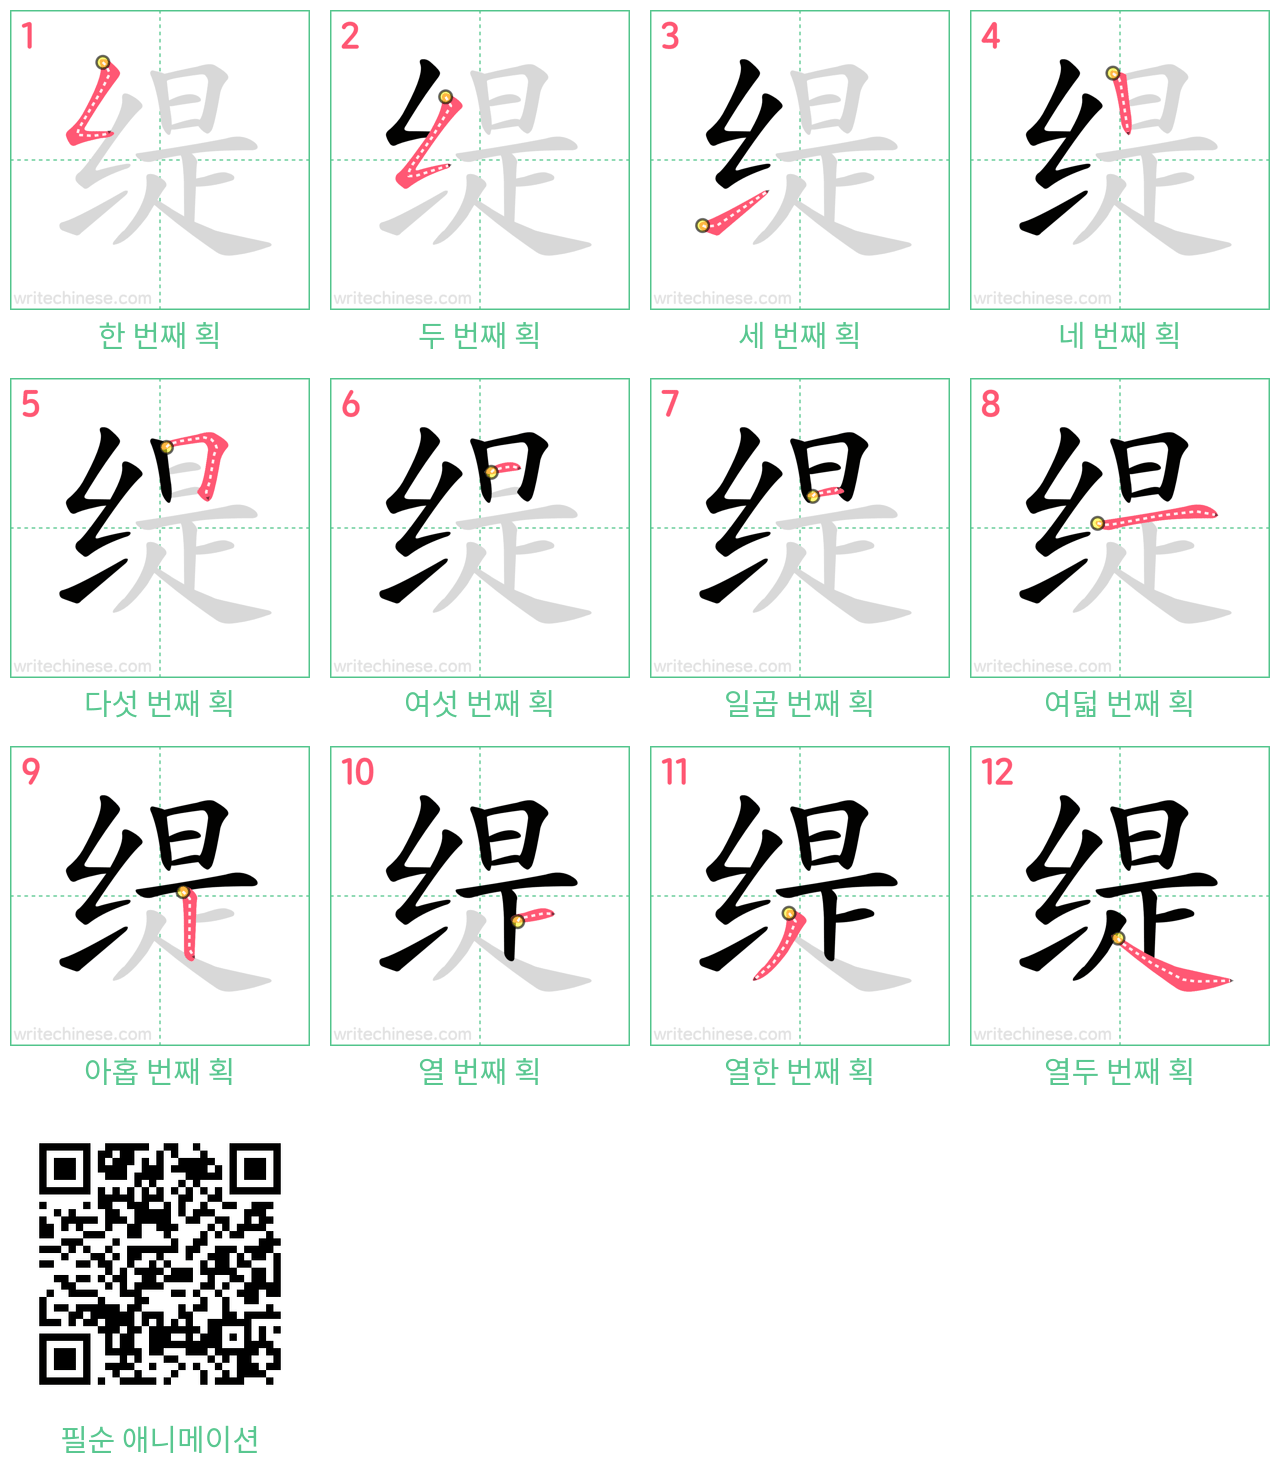 缇 step-by-step stroke order diagrams